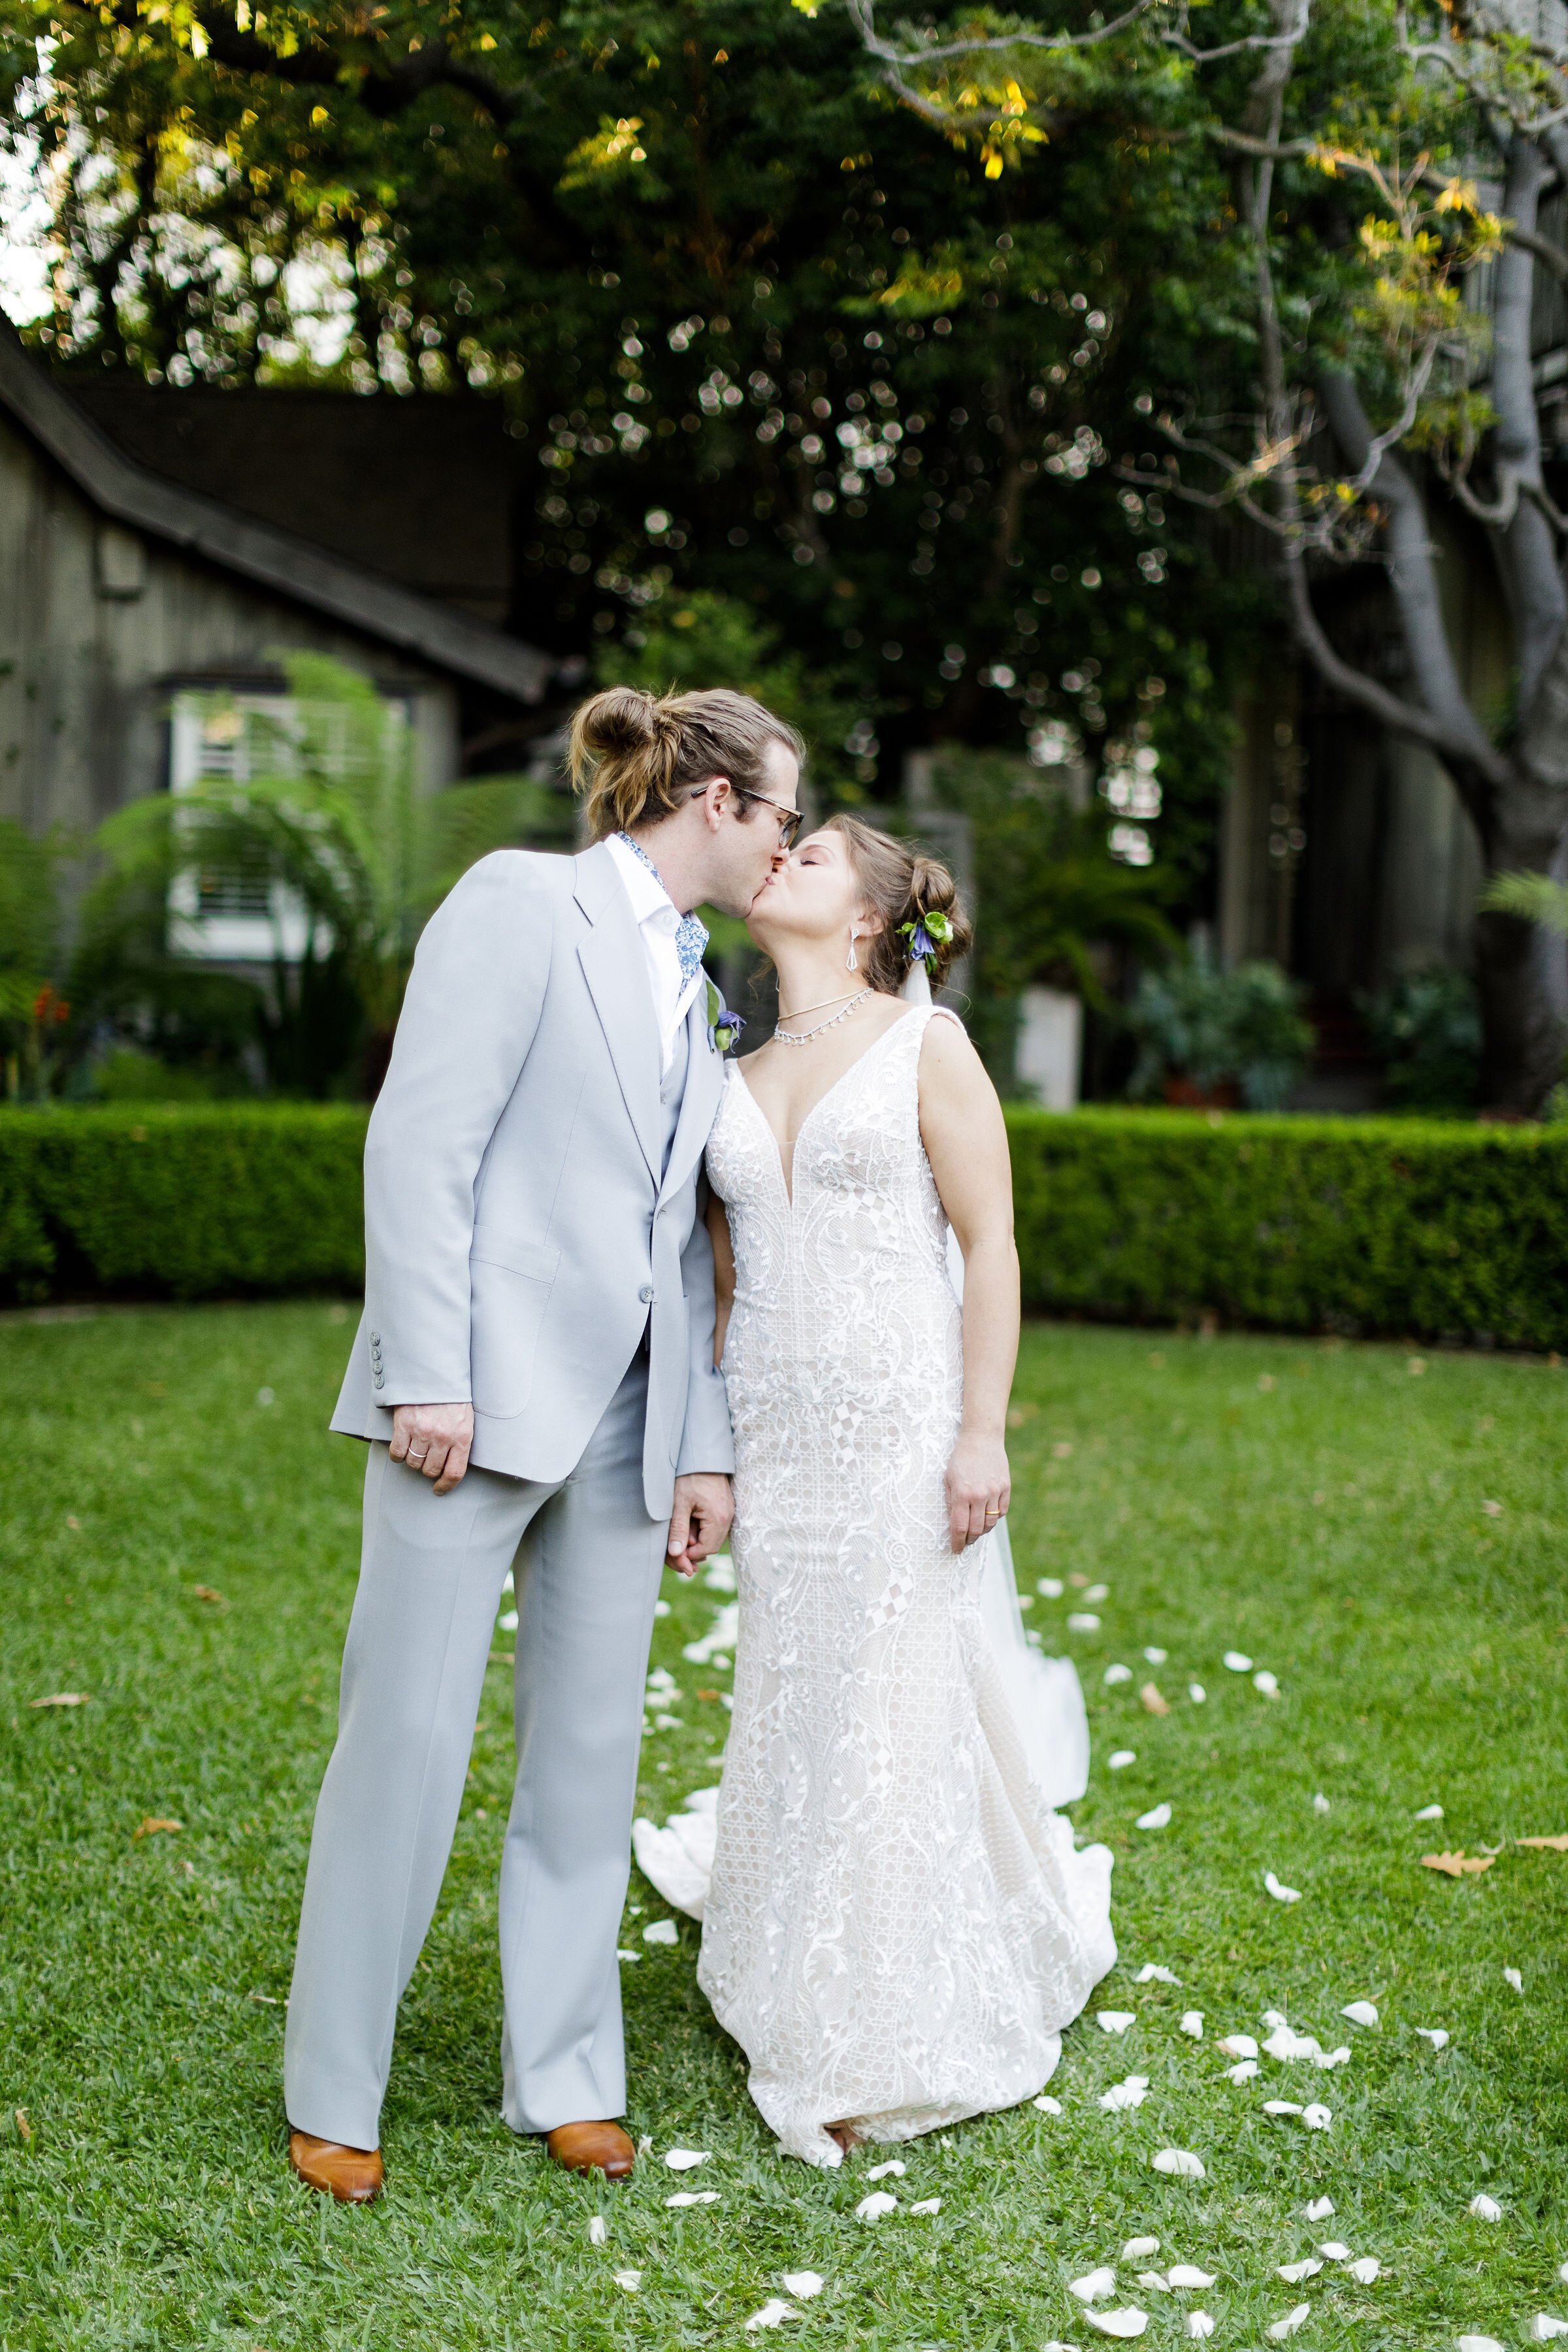 www.santabarbarawedding.com | Kiel Rucker | Ann Johnson Events | Simpson House Inn | The Poppy Pod | Bride and Groom Share a Kiss